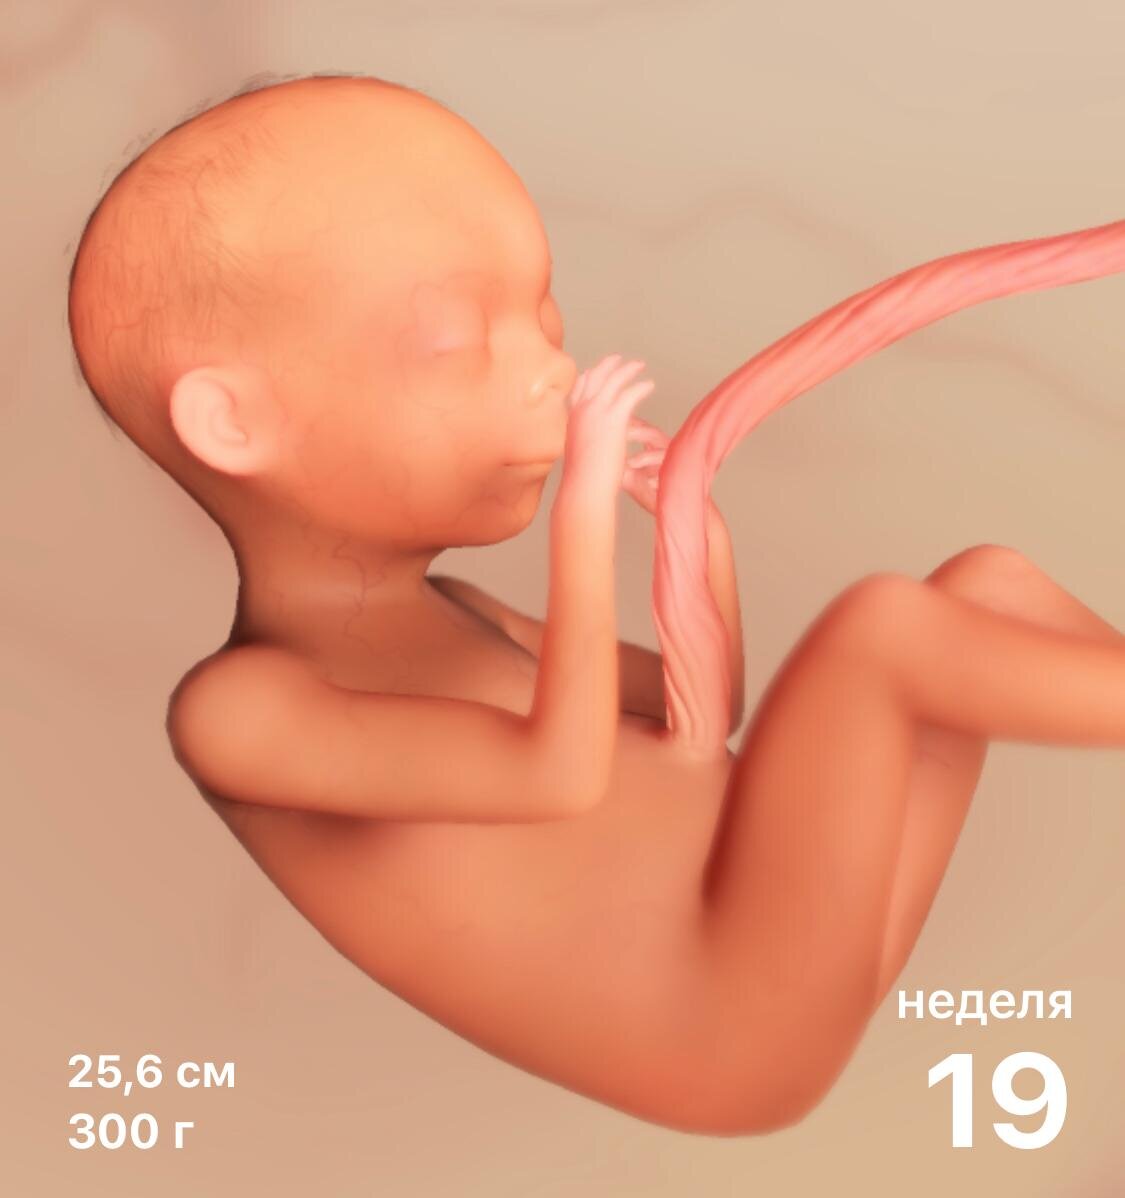 19 недель беременности выделения из груди фото 11